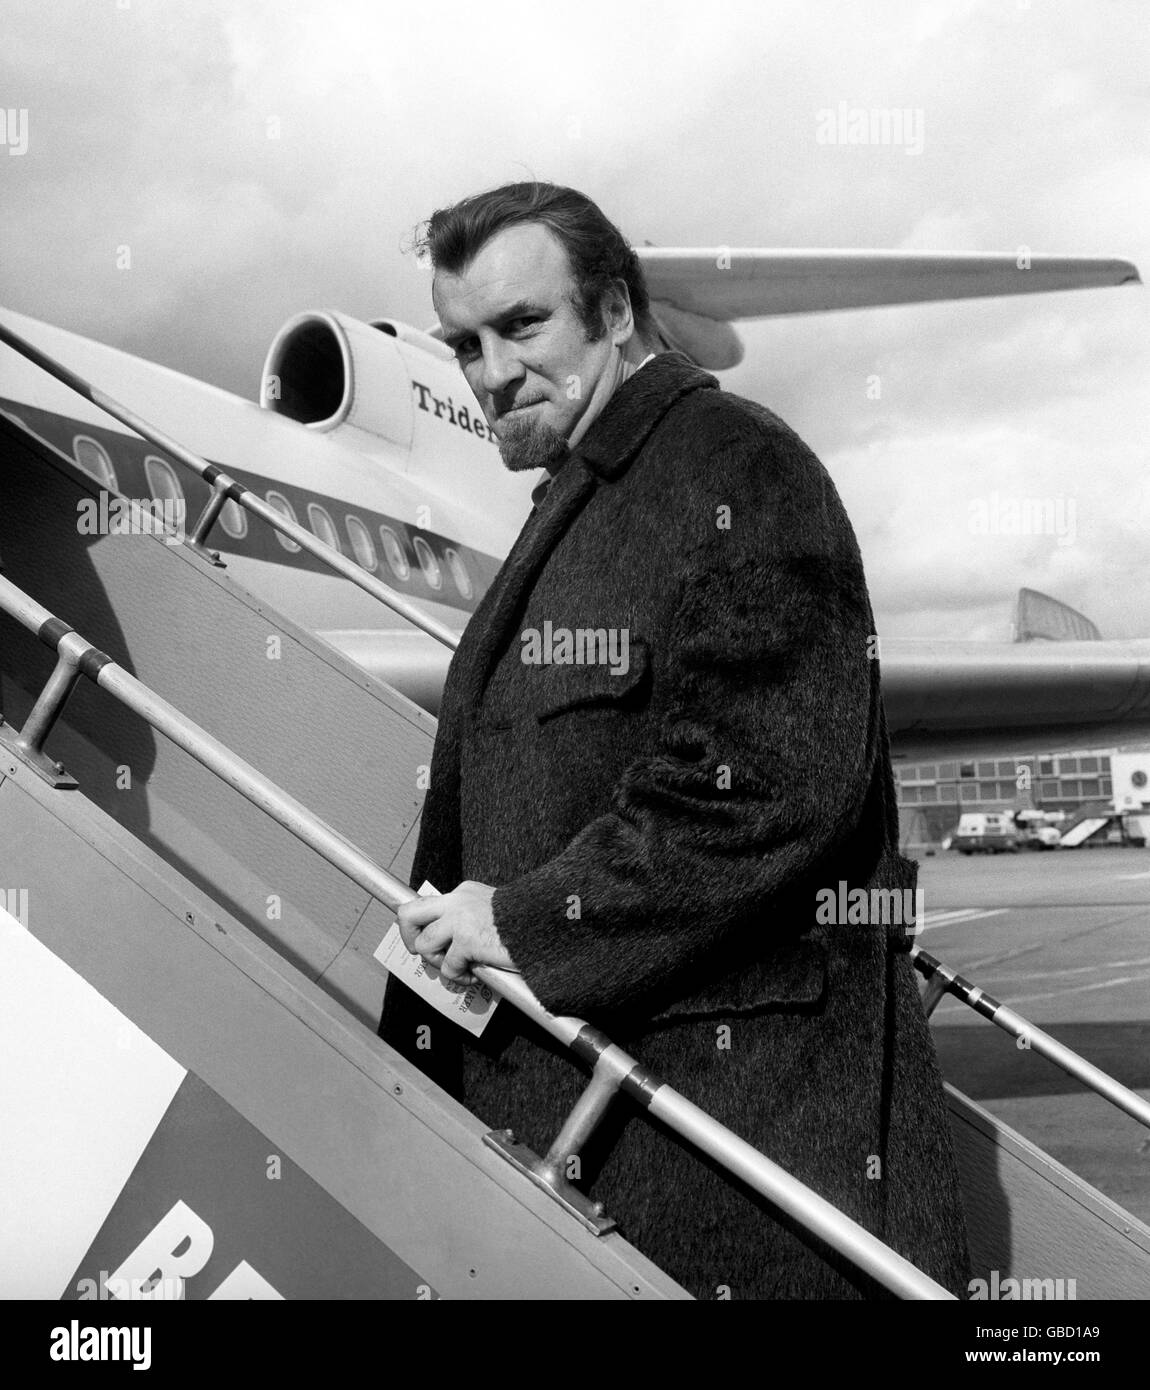 Musica - Acker Bilk - Aeroporto di Heathrow - Londra - 1967. Acker Bilk, leader della band bearded, lascia l'aeroporto di Heathrow per un concerto in Germania. Foto Stock